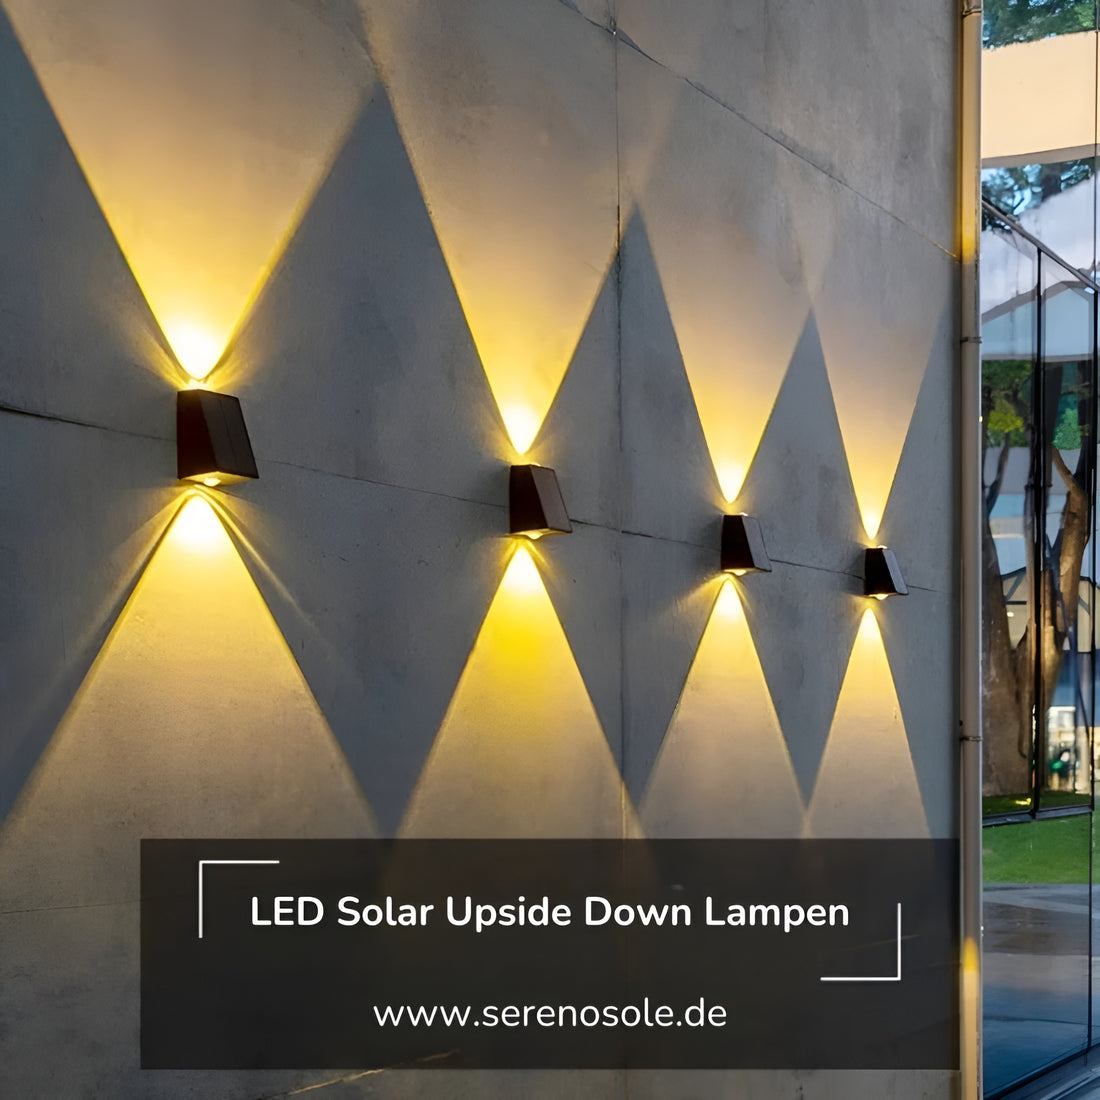 Serenosole™ Kabellose LED Solar Upside Down Lampen - Schaffe die perfekte Atmosphäre in deinem Garten! (1+1 GRATIS)